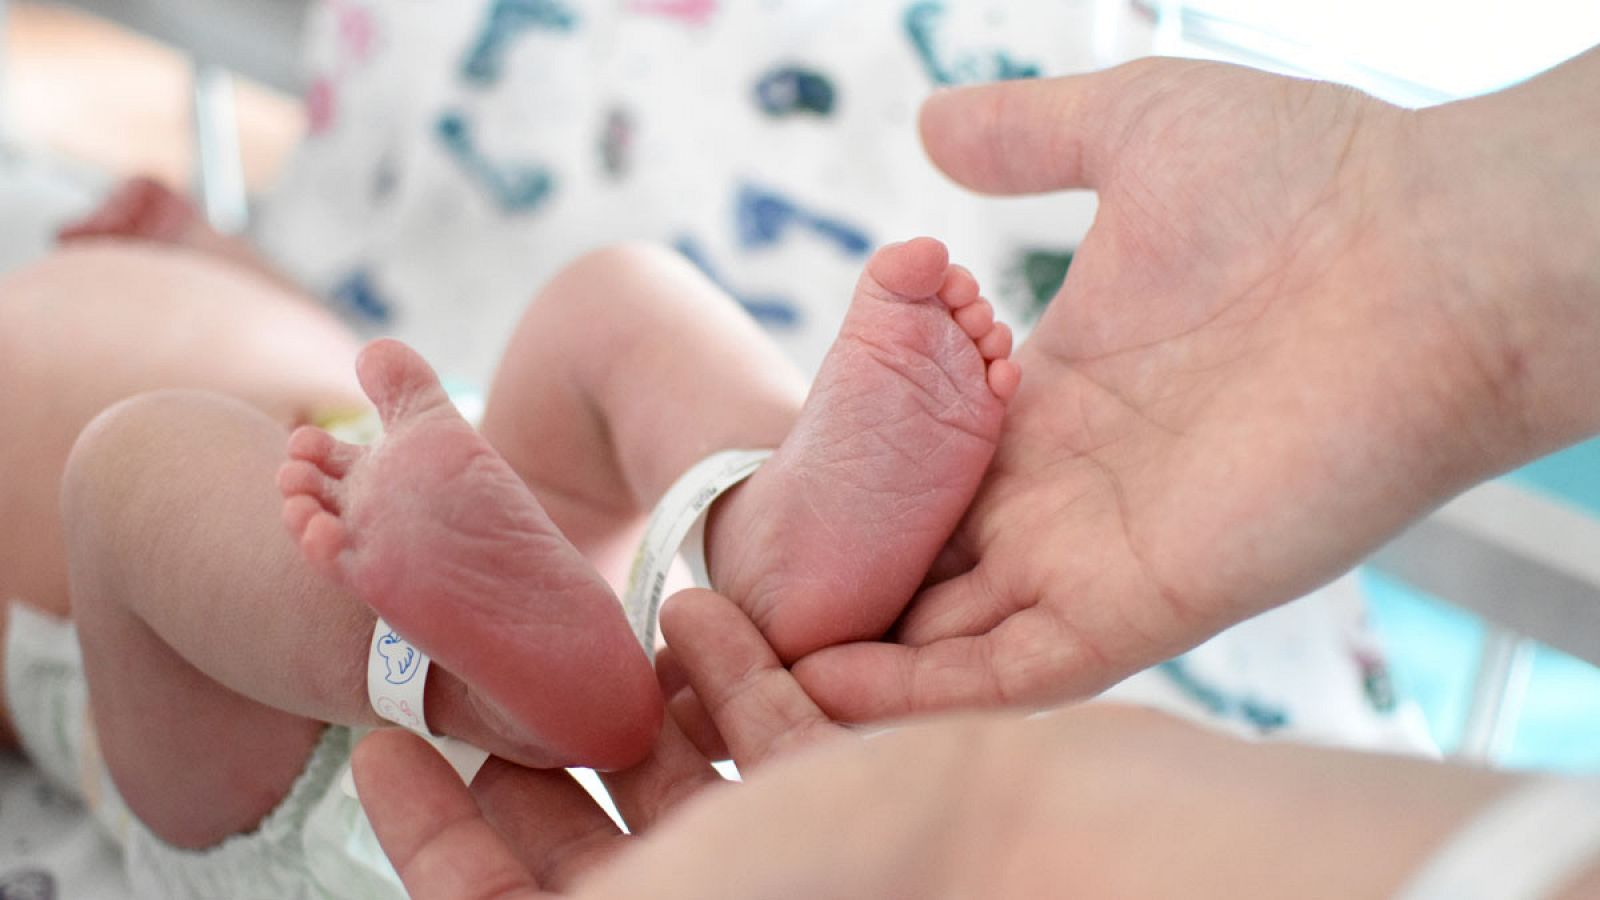 La revista médica The Lancet ha publicado una investigación llevada a cabo en un hospital de Brasil sobre el primer bebé nacido en un útero trasplantado a partir de una donante fallecida, que podría aumentar las opciones de concebir para las mujeres 